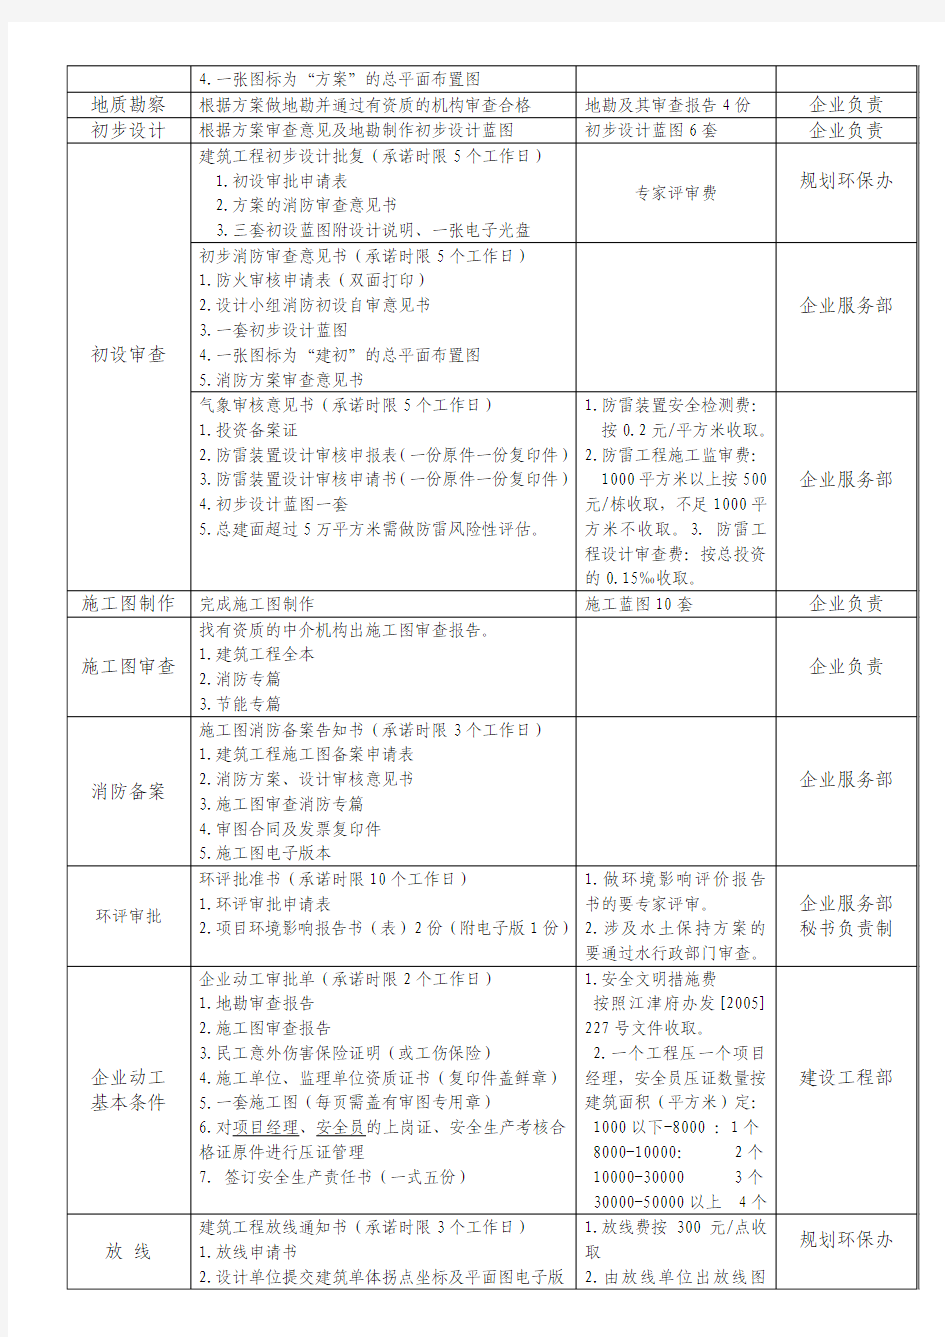 重庆江津双福新区项目开发流程表(全详)